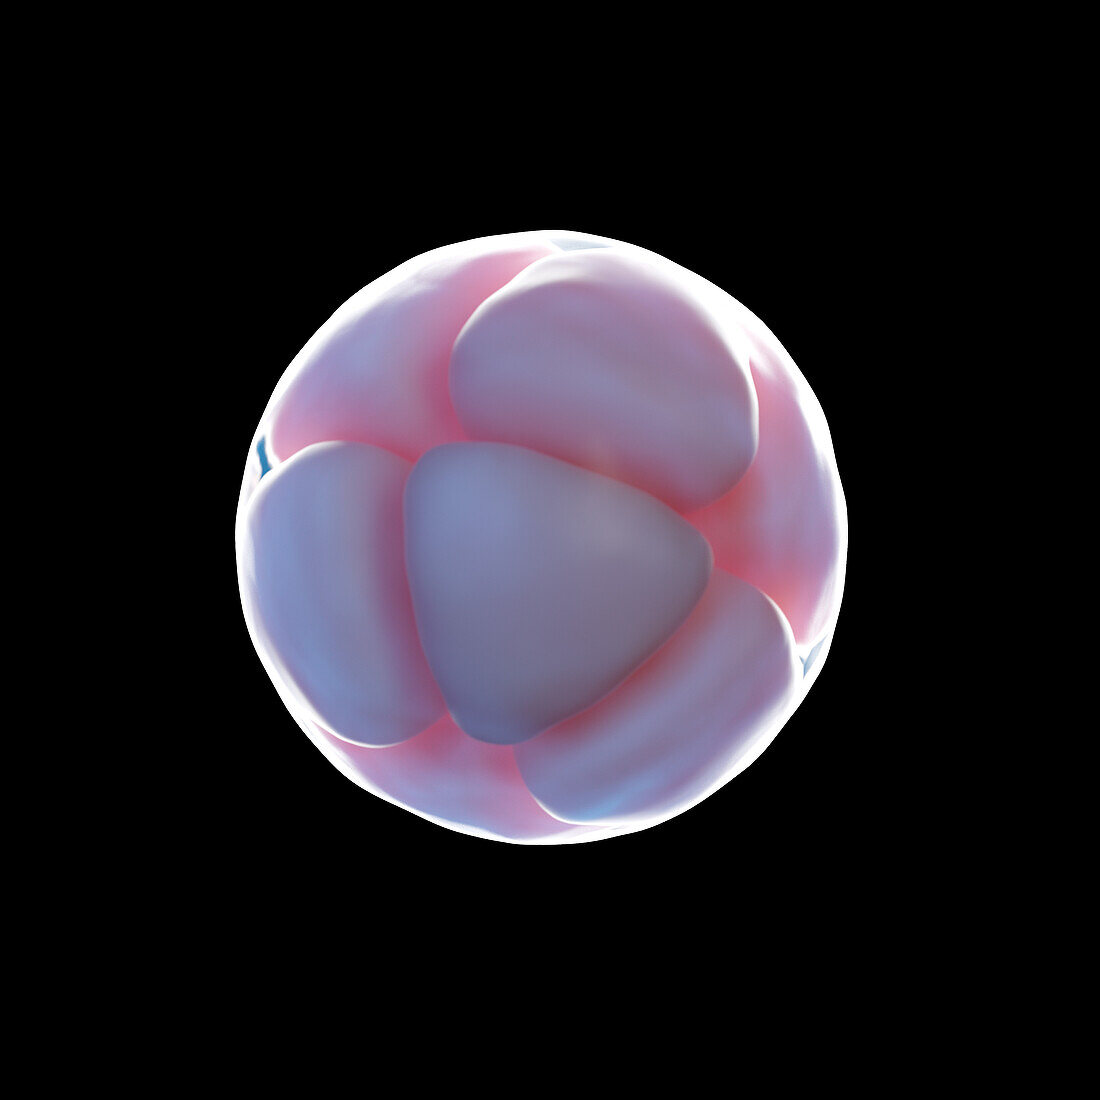 8 cell egg, illustration